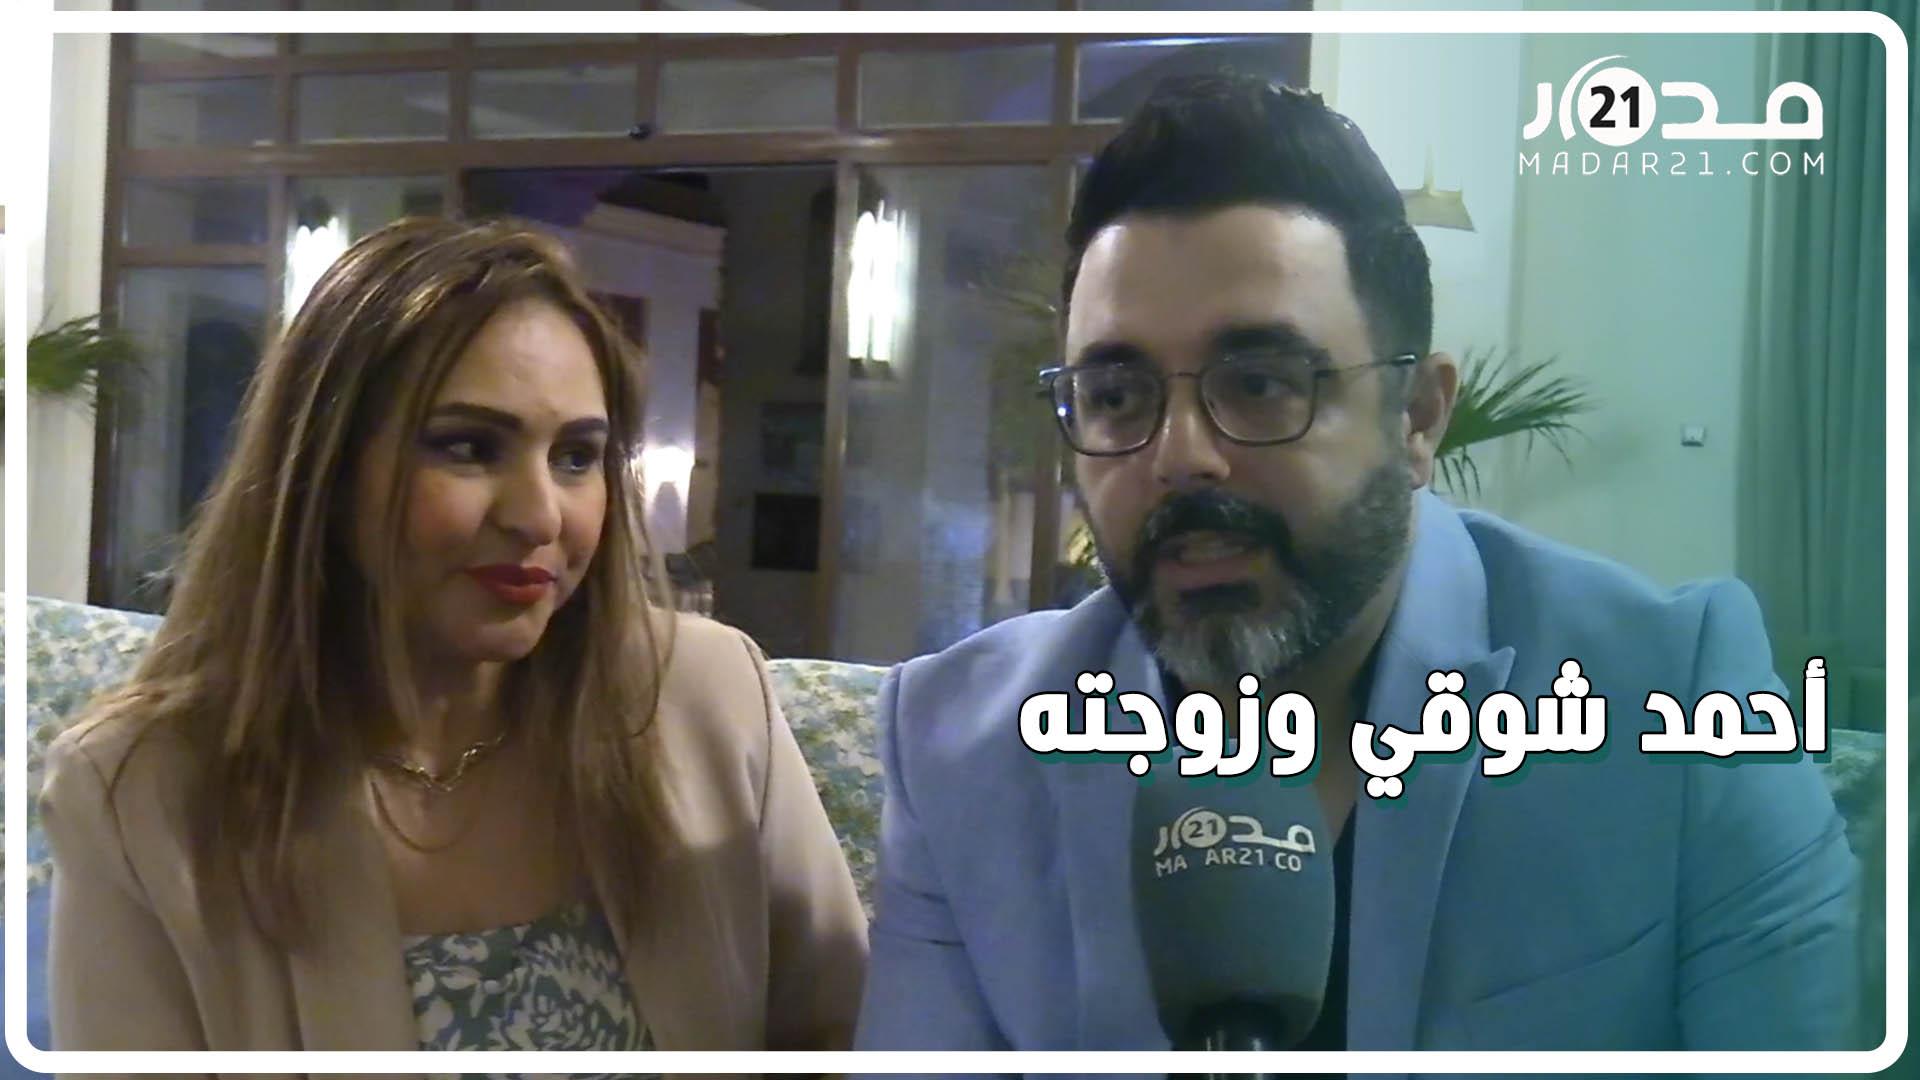 أحمد شوقي وزوجته يتحدثان عن علاقتهما وأطفالهما/ديو مع الشاب خالد/المنتخب المغربي/جوني ديب